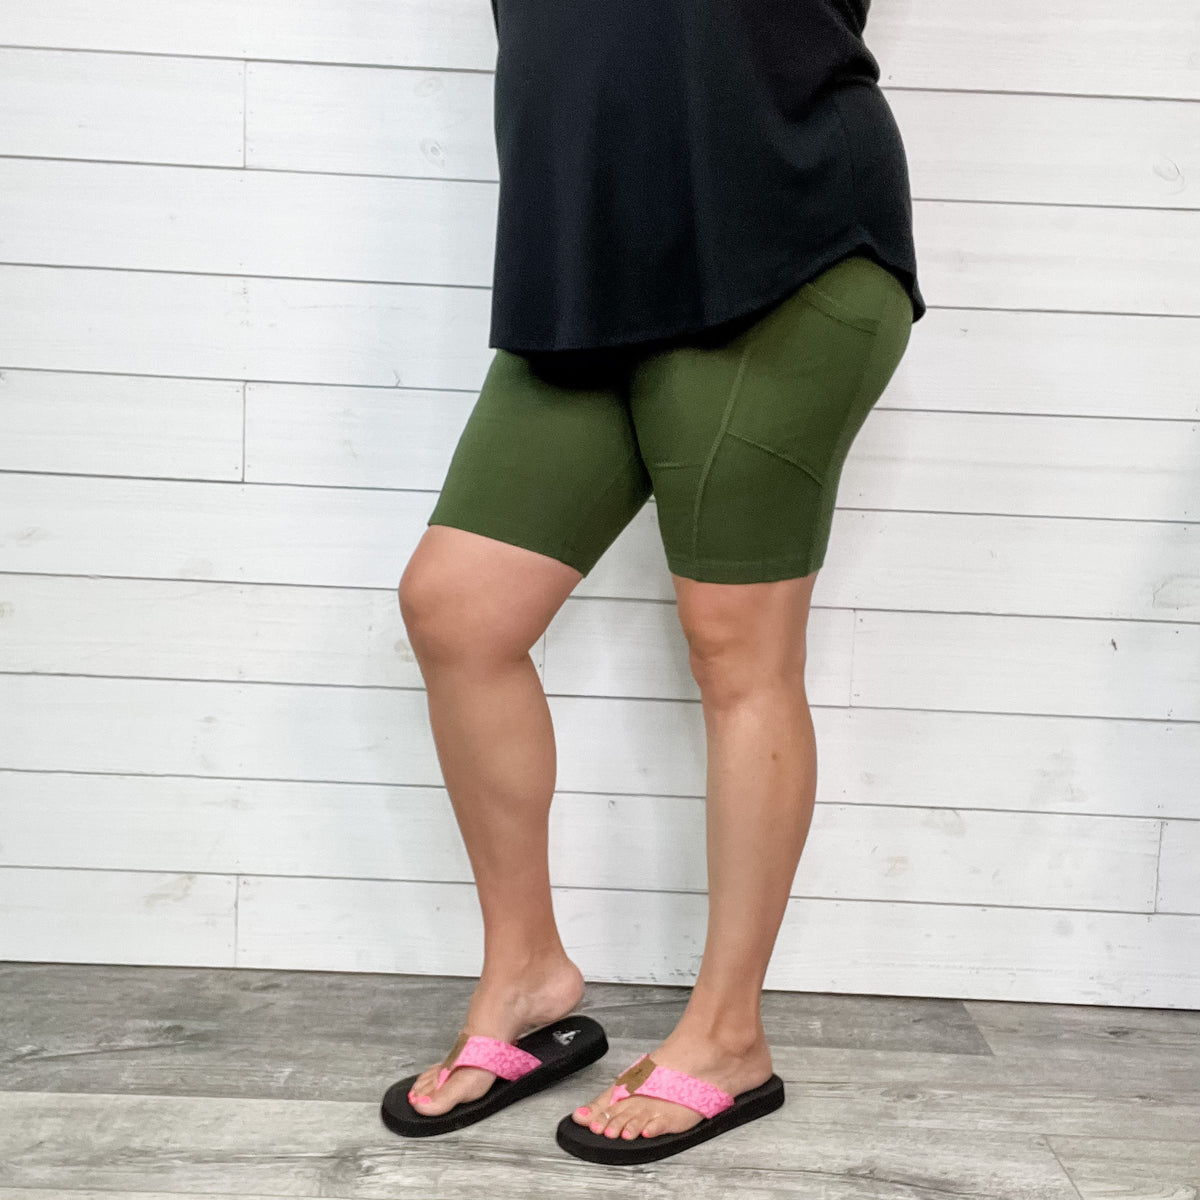 Cotton No Chub Rub Bike Shorts with Pockets (Army Green)-Lola Monroe Boutique